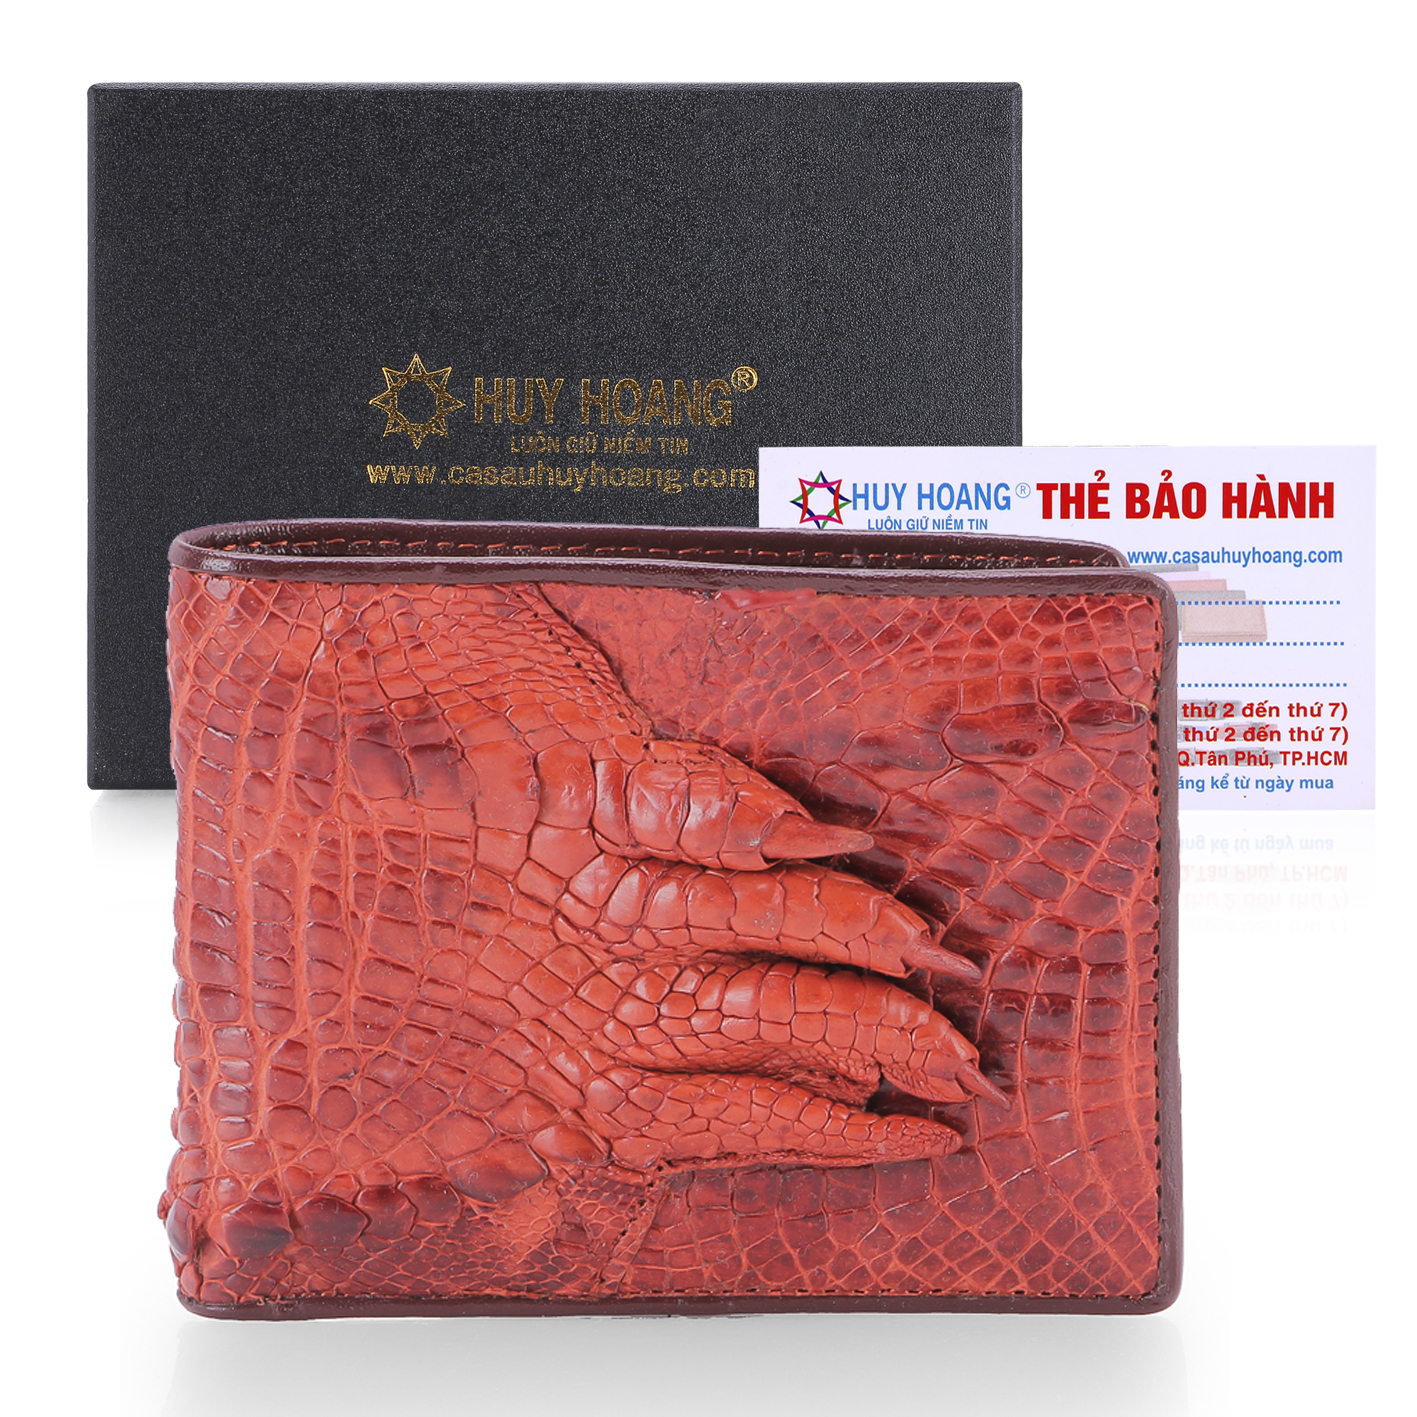 Bóp nam Huy Hoàng da cá sấu gù chân màu nâu đỏ - HY2233 - 1859423